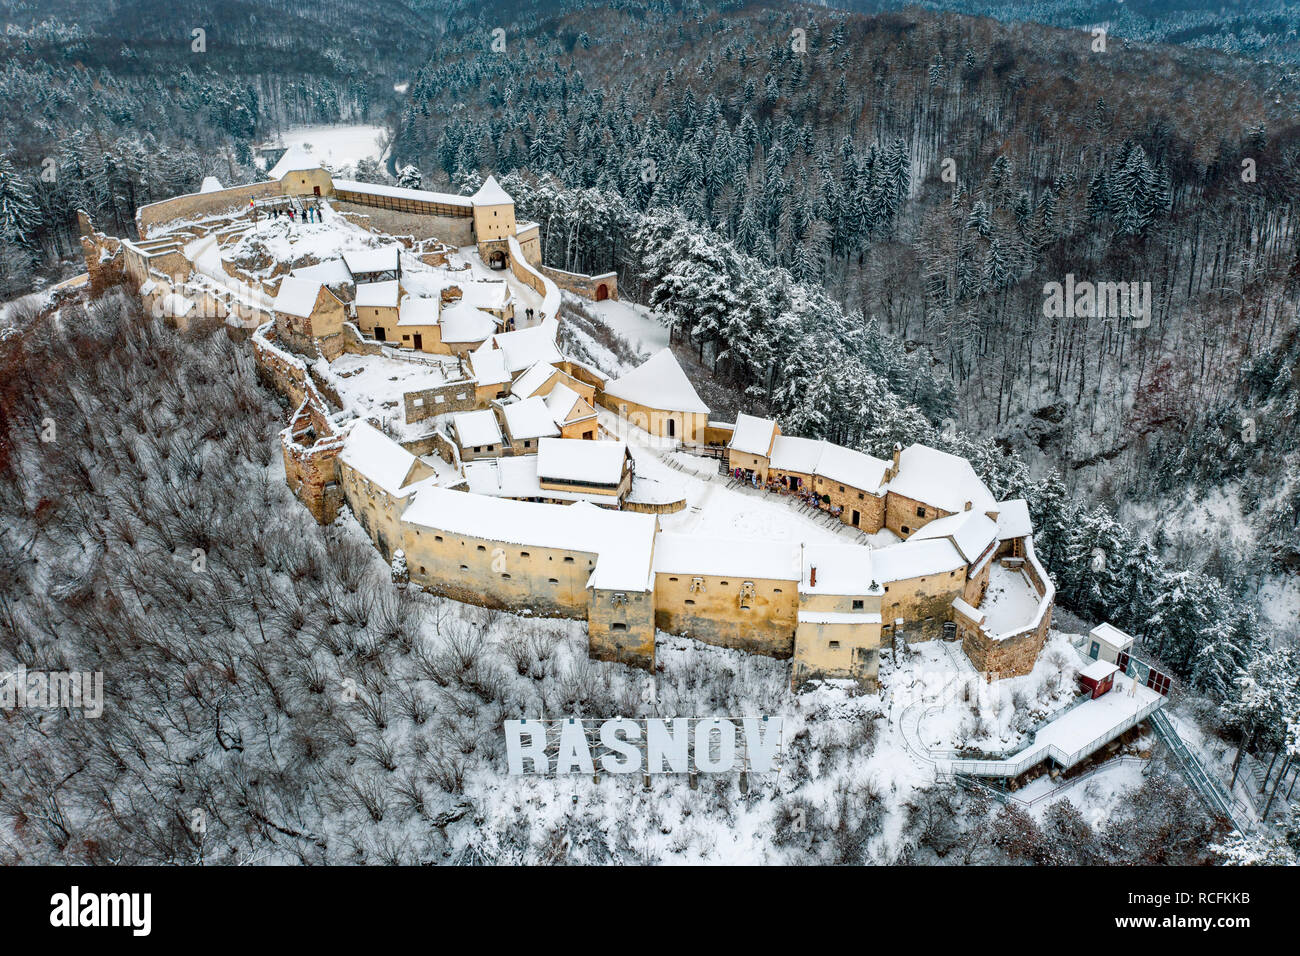 Rasnov peasant fortress in Rasnov city near Bran and Brasov in Transylvania, Romania Stock Photo